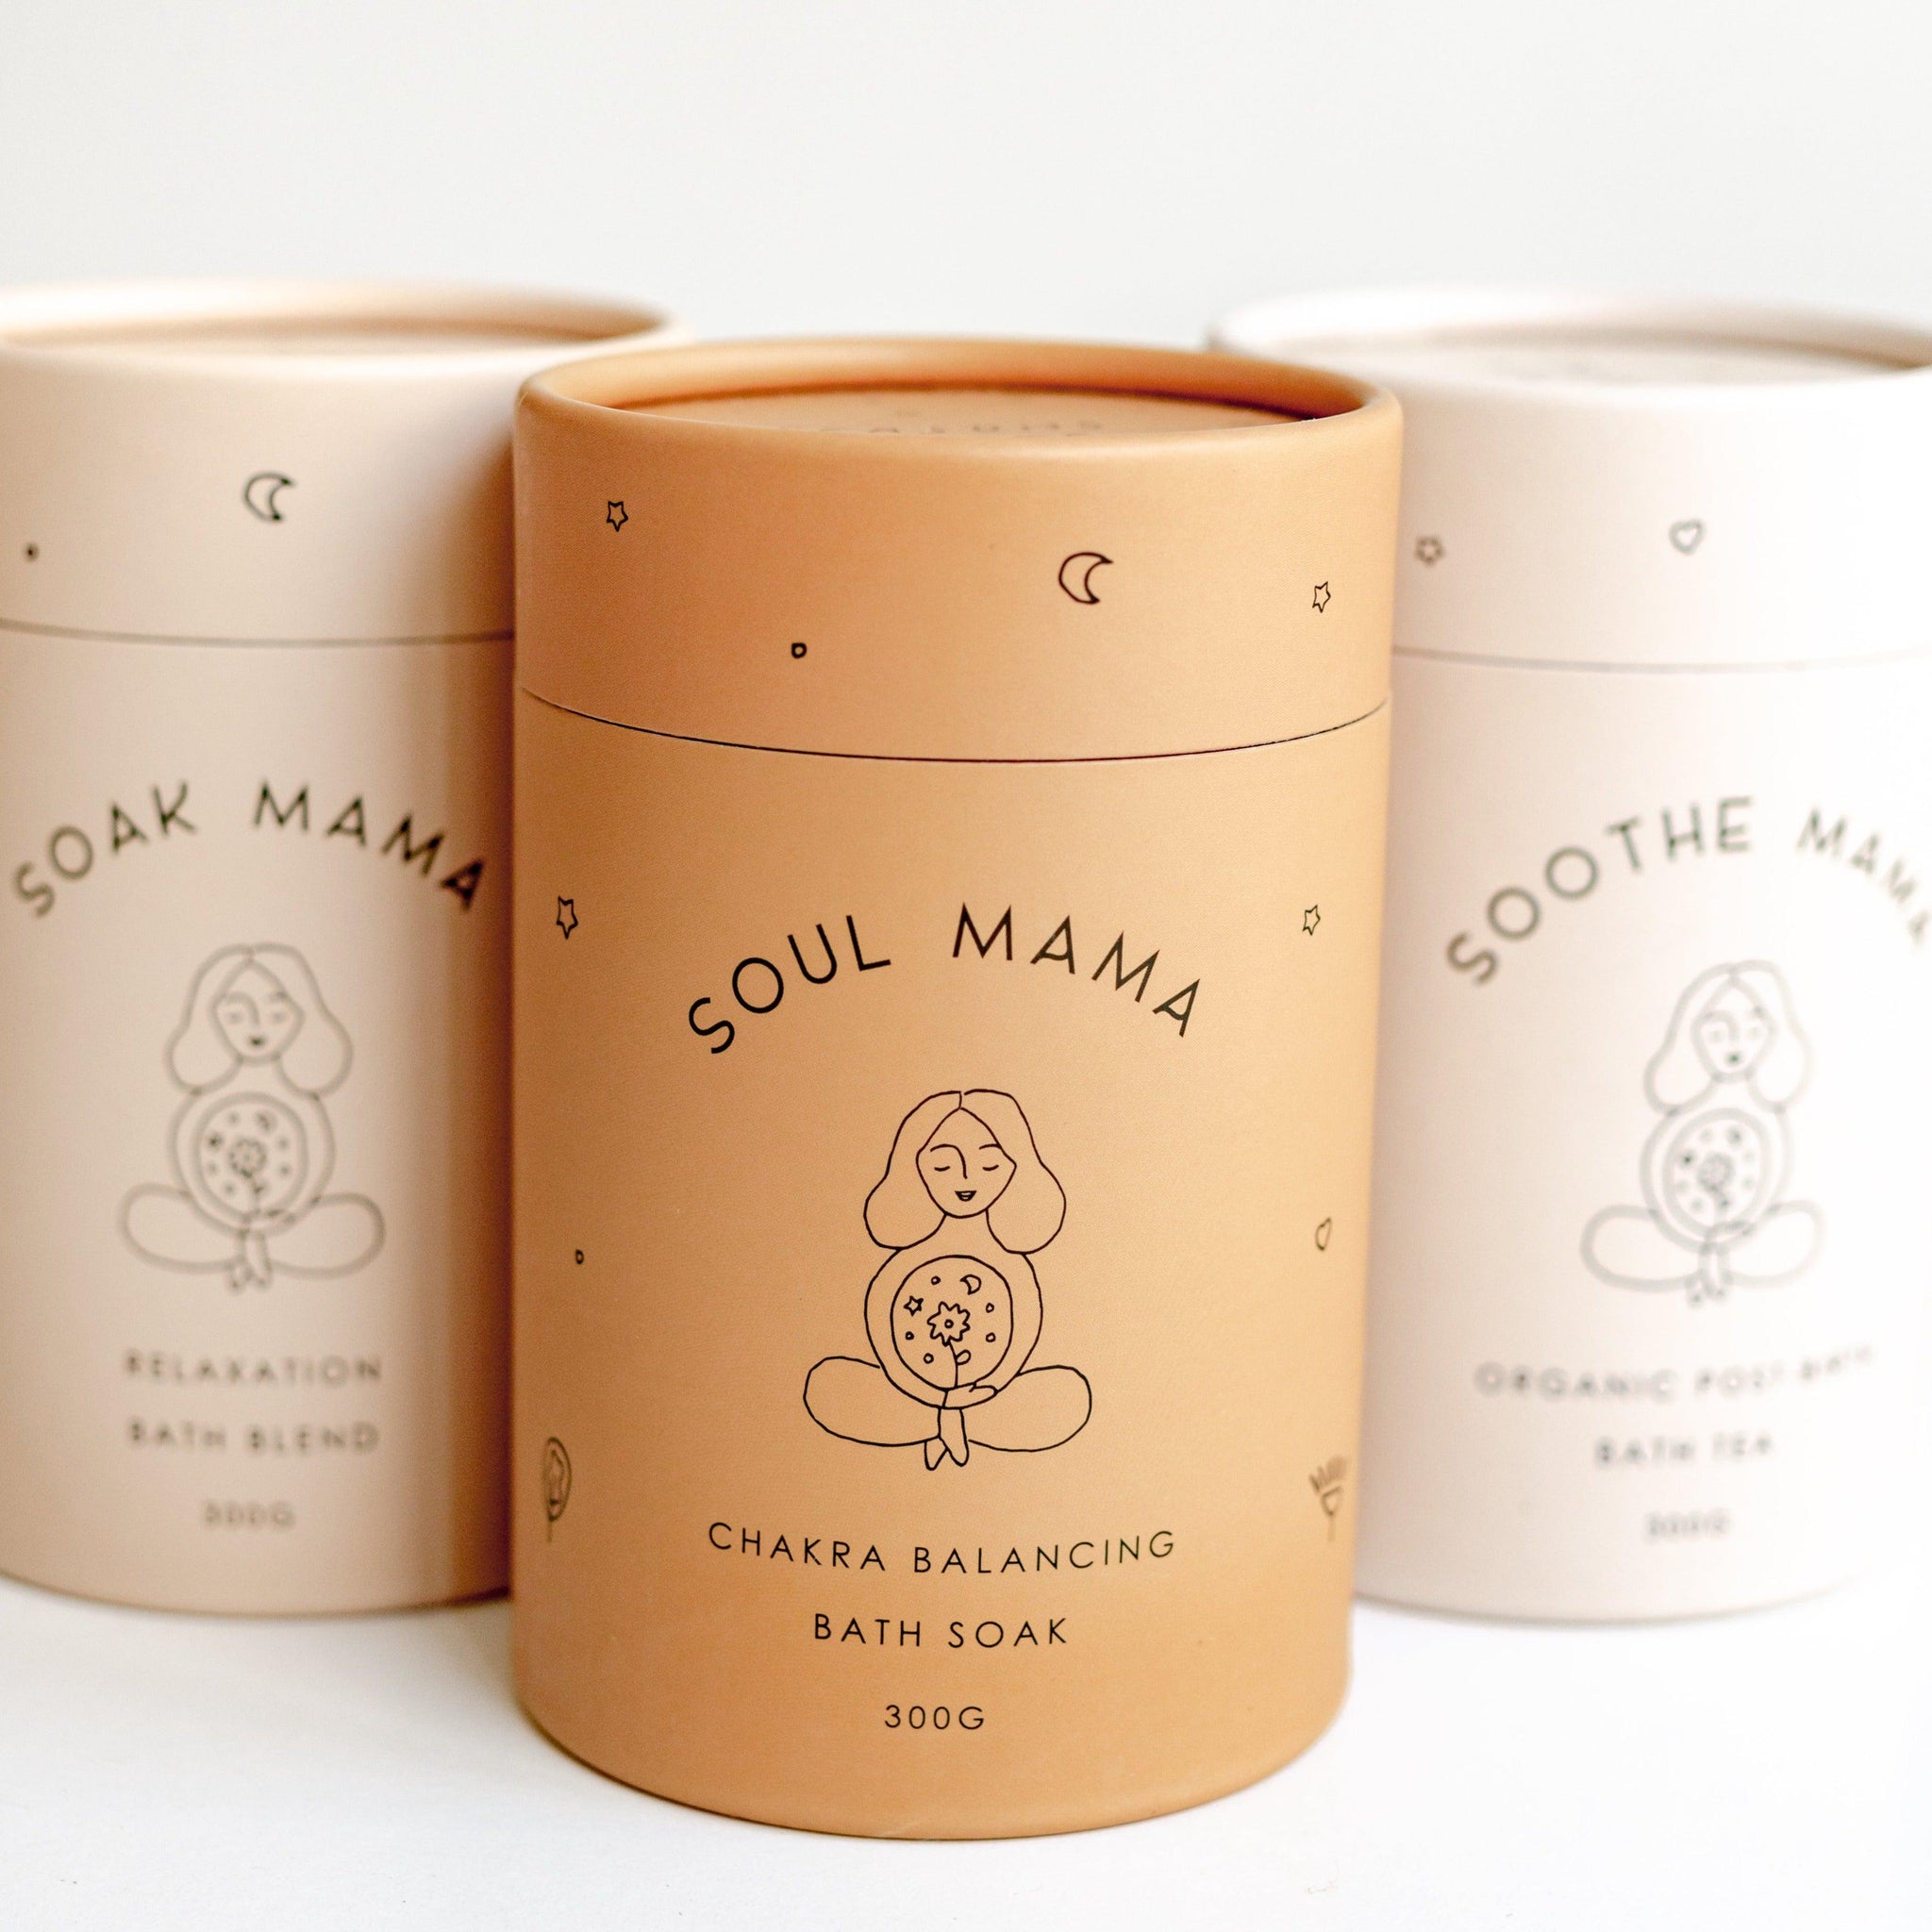 Three tins by Seasons of Mama including Soak Mama, Soul Mama and Soothe Mama.